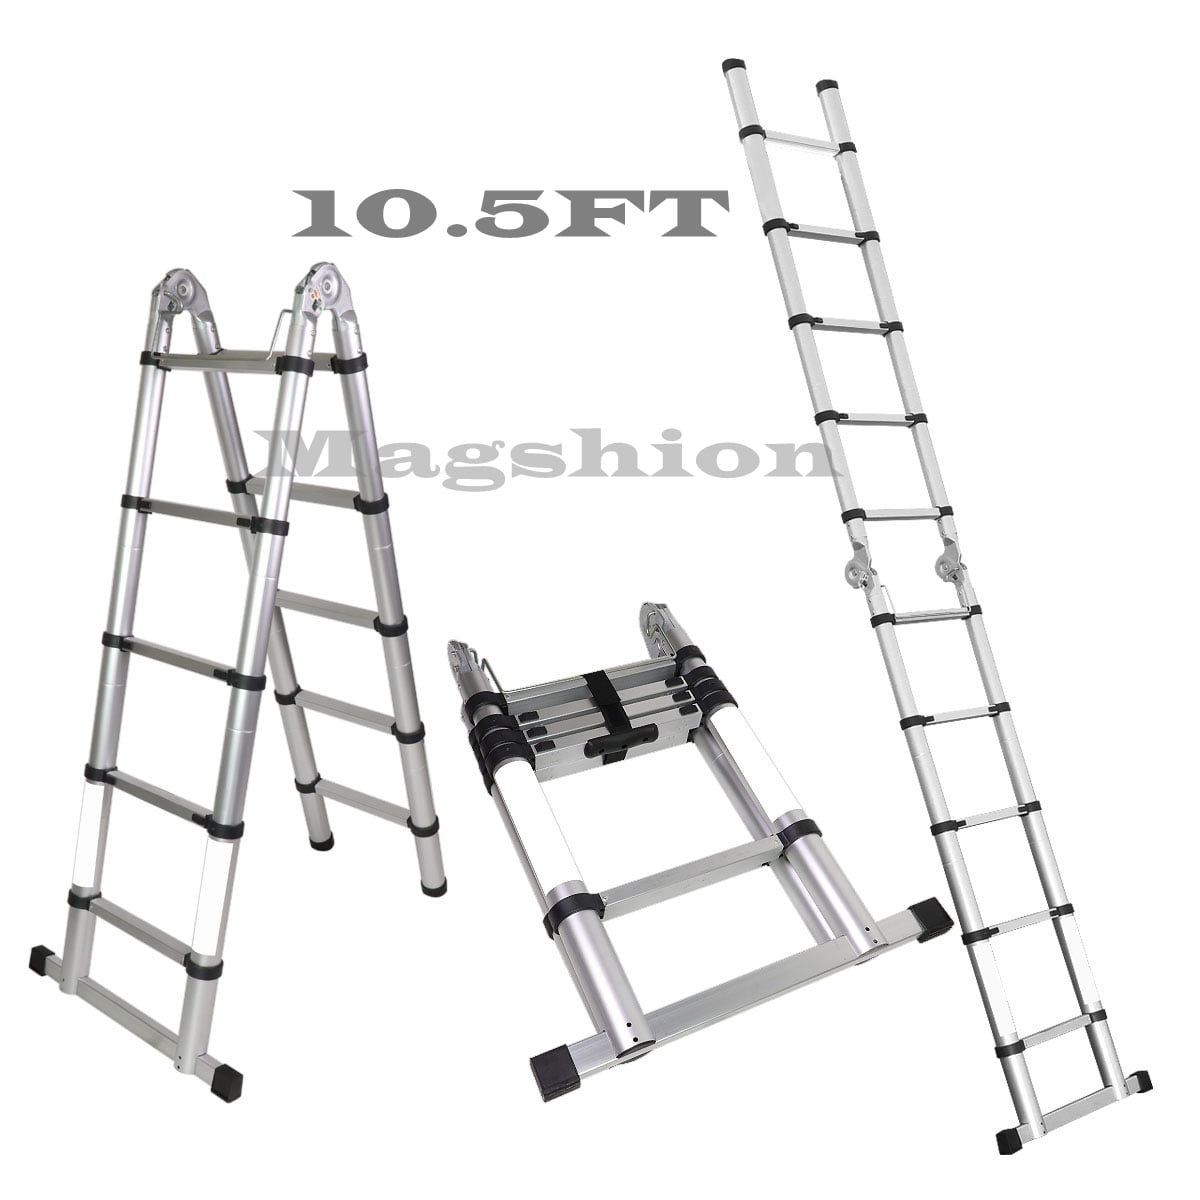 Details about   EN131 Telescopic Folding Aluminum 16.5FT Ladder Extension Step Multi Purpose US 